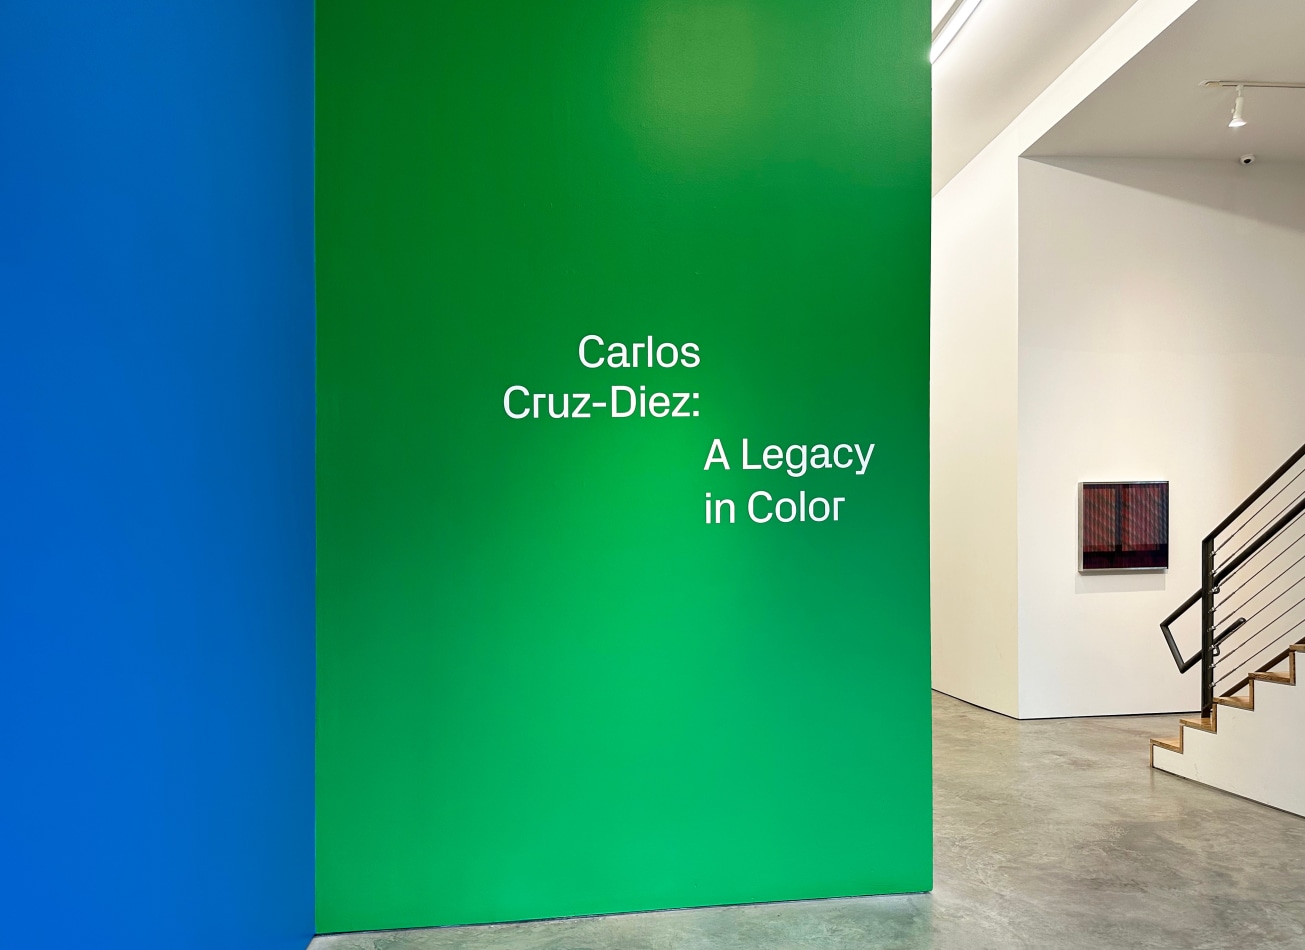 Carlos Cruz-Diez: A Legacy in Color